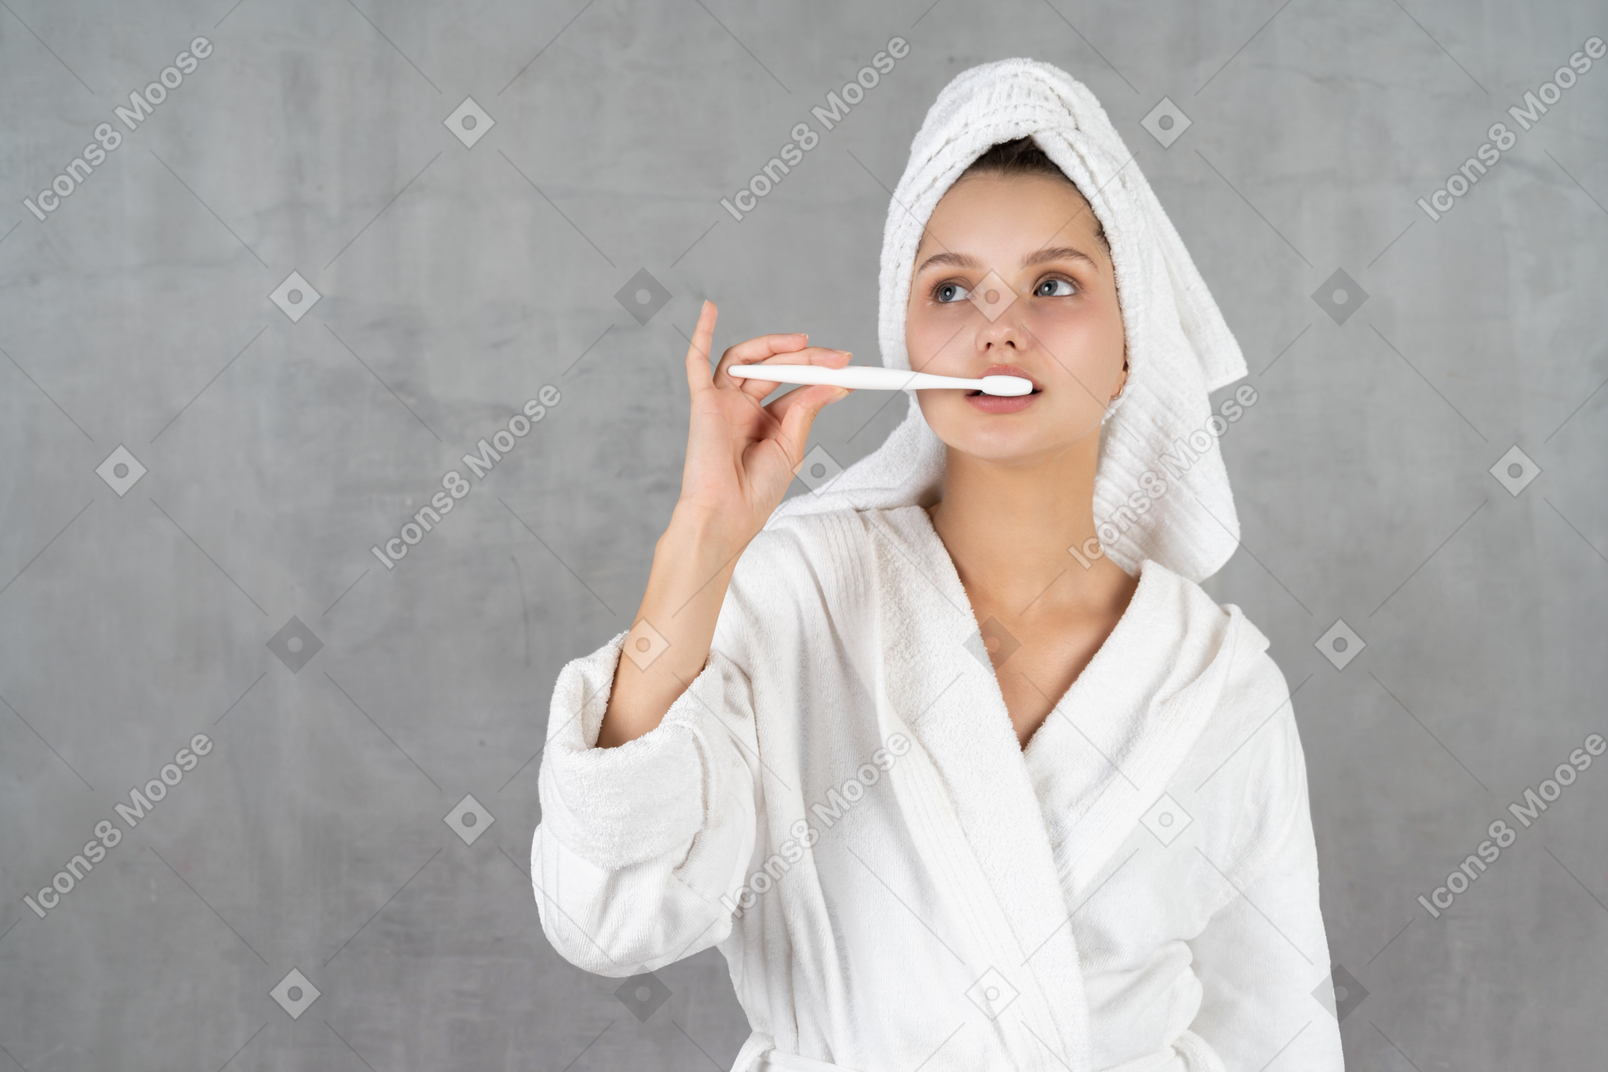 Mulher de roupão escovando os dentes